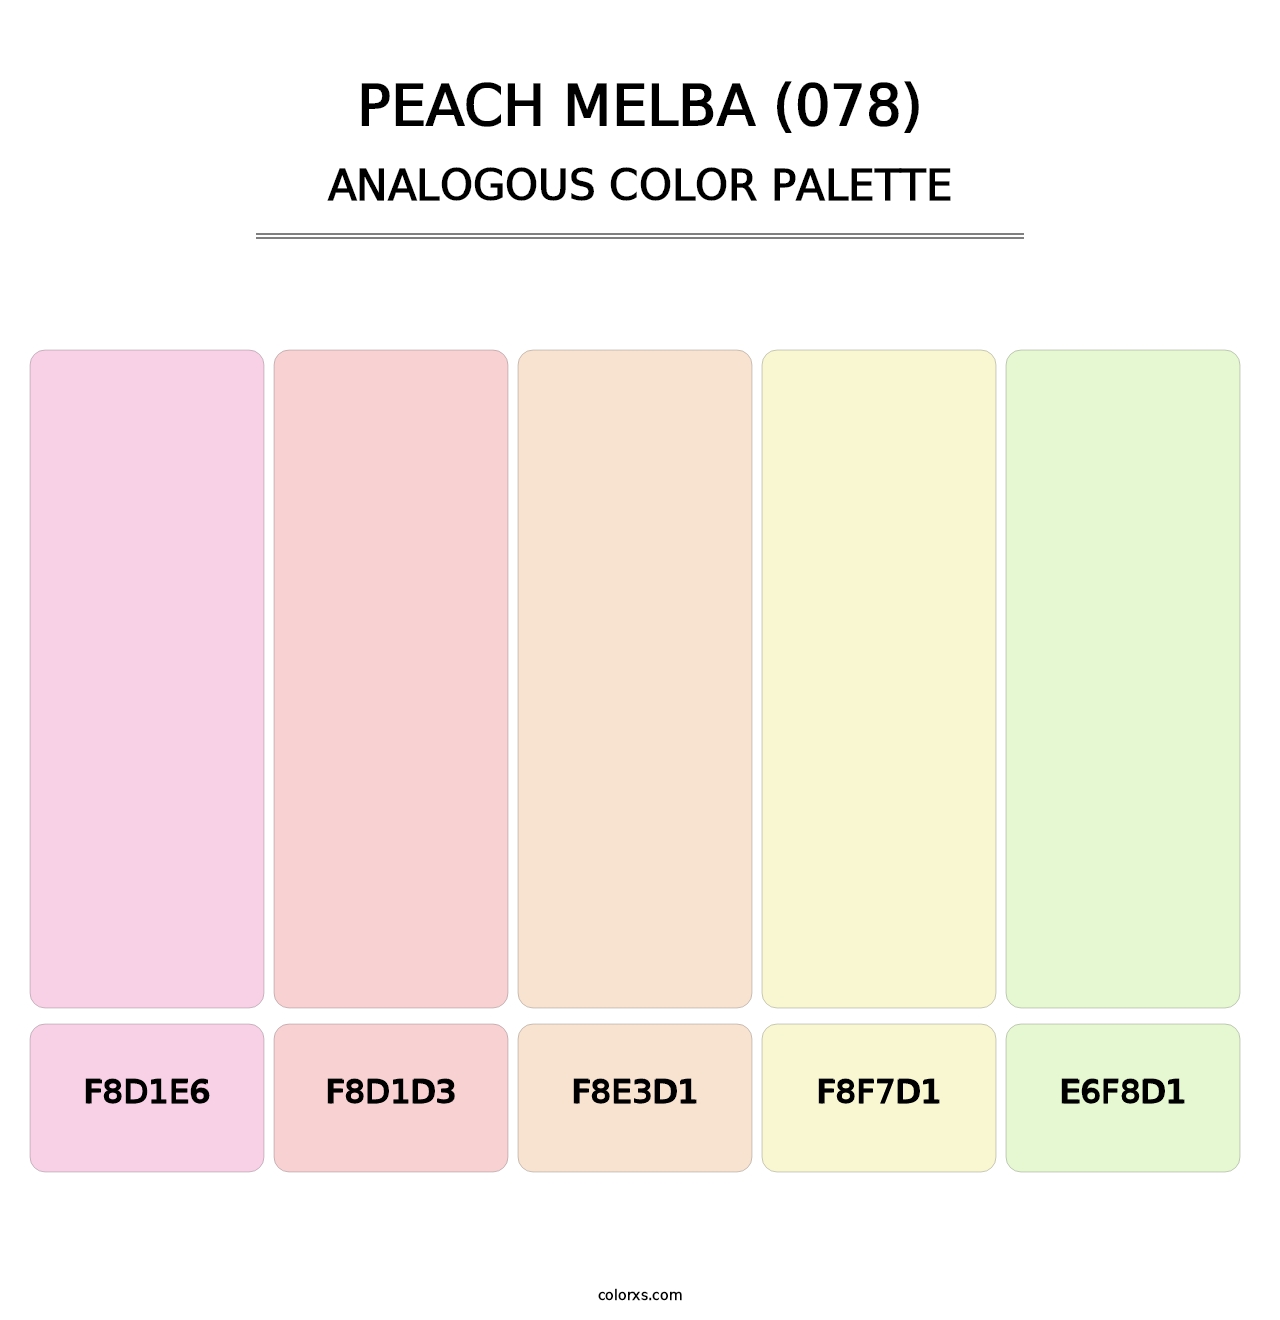 Peach Melba (078) - Analogous Color Palette